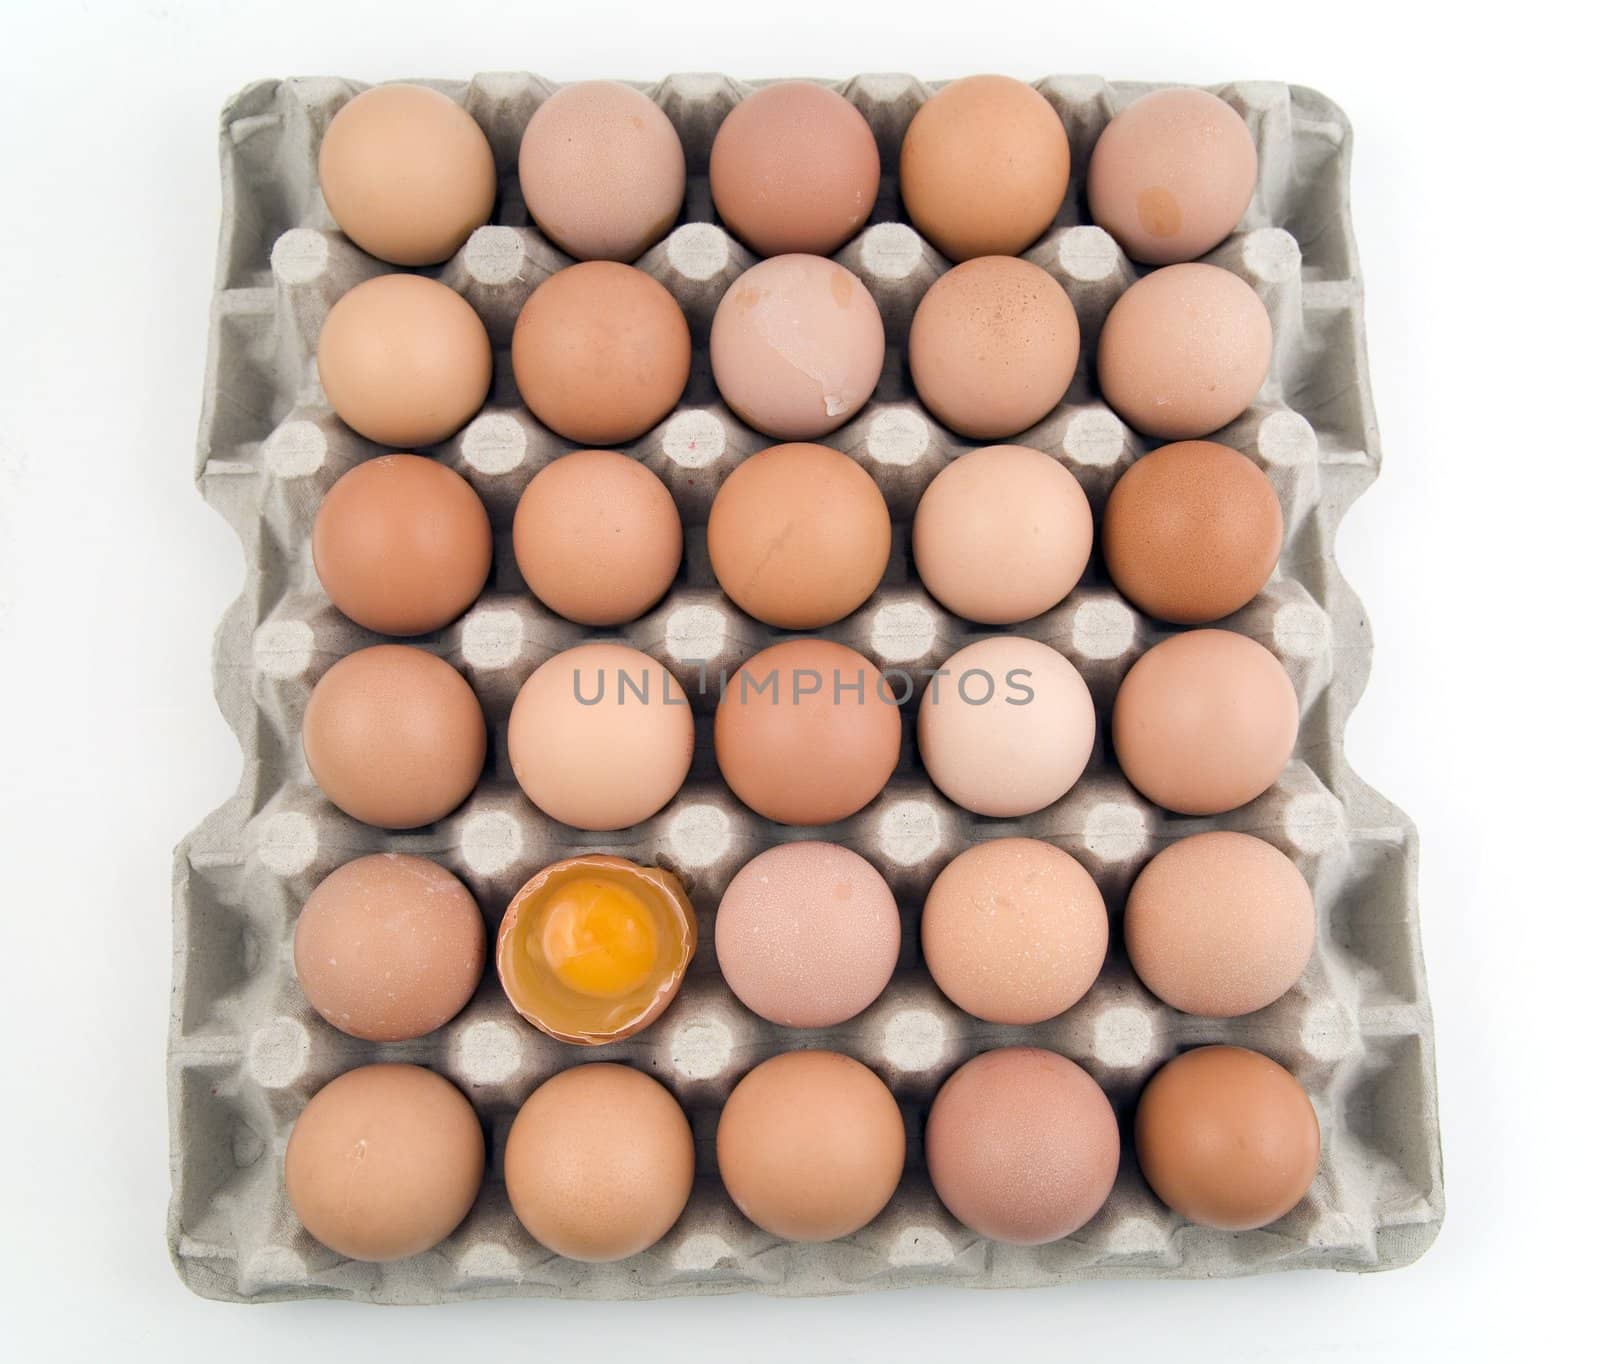 plenty of eggs by furzyk73